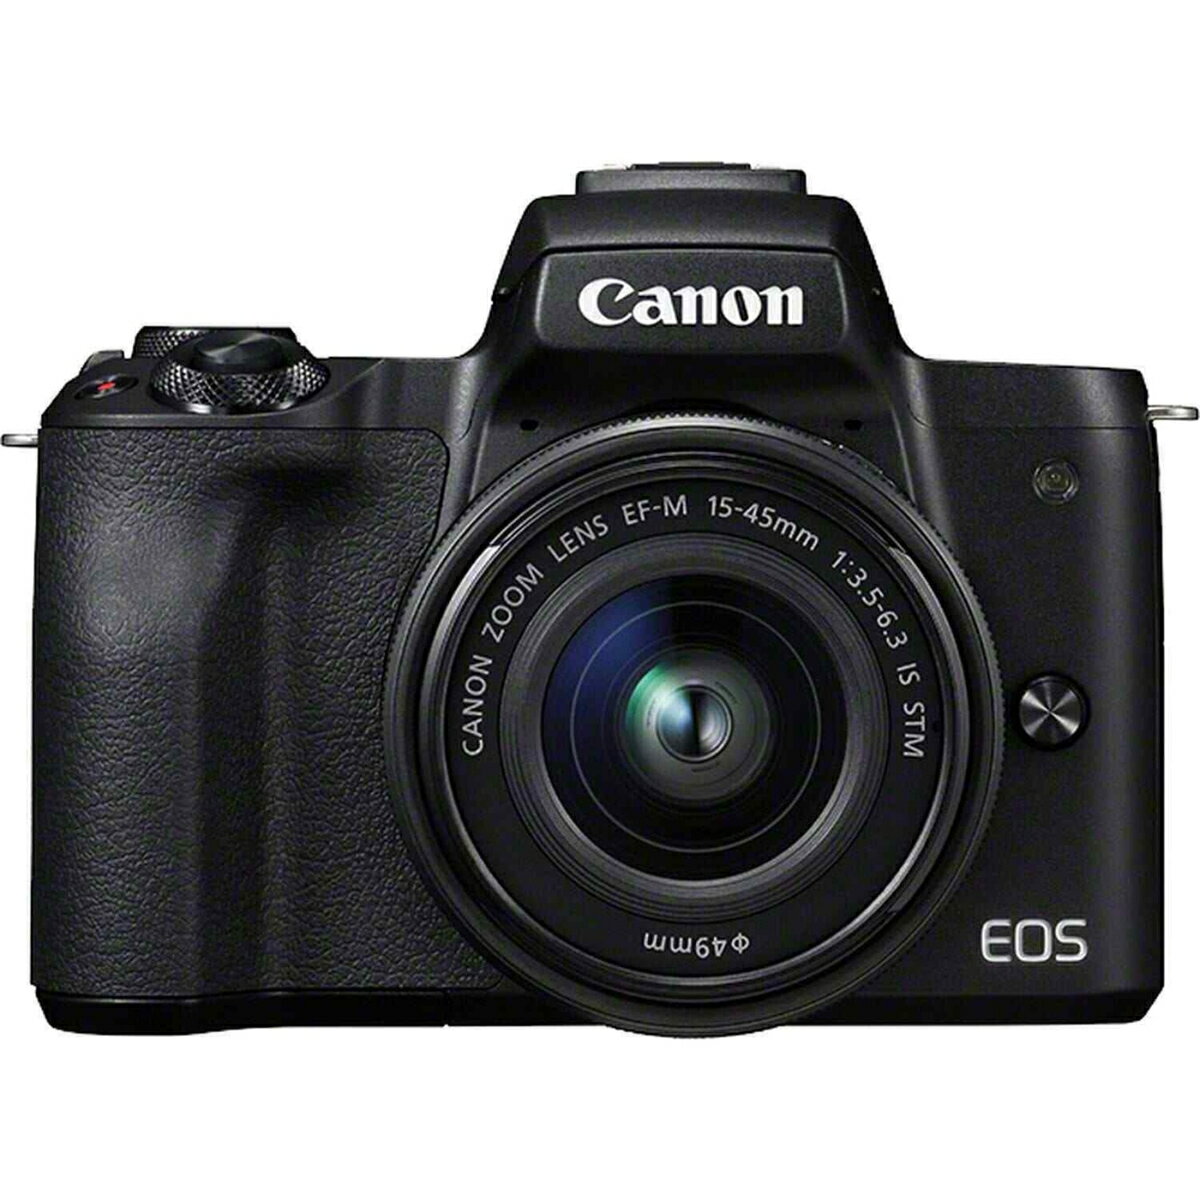 デジタルカメラ, ミラーレス一眼カメラ 252320:005271:59Canon EOS Kiss M EF-M15-45 IS STM 